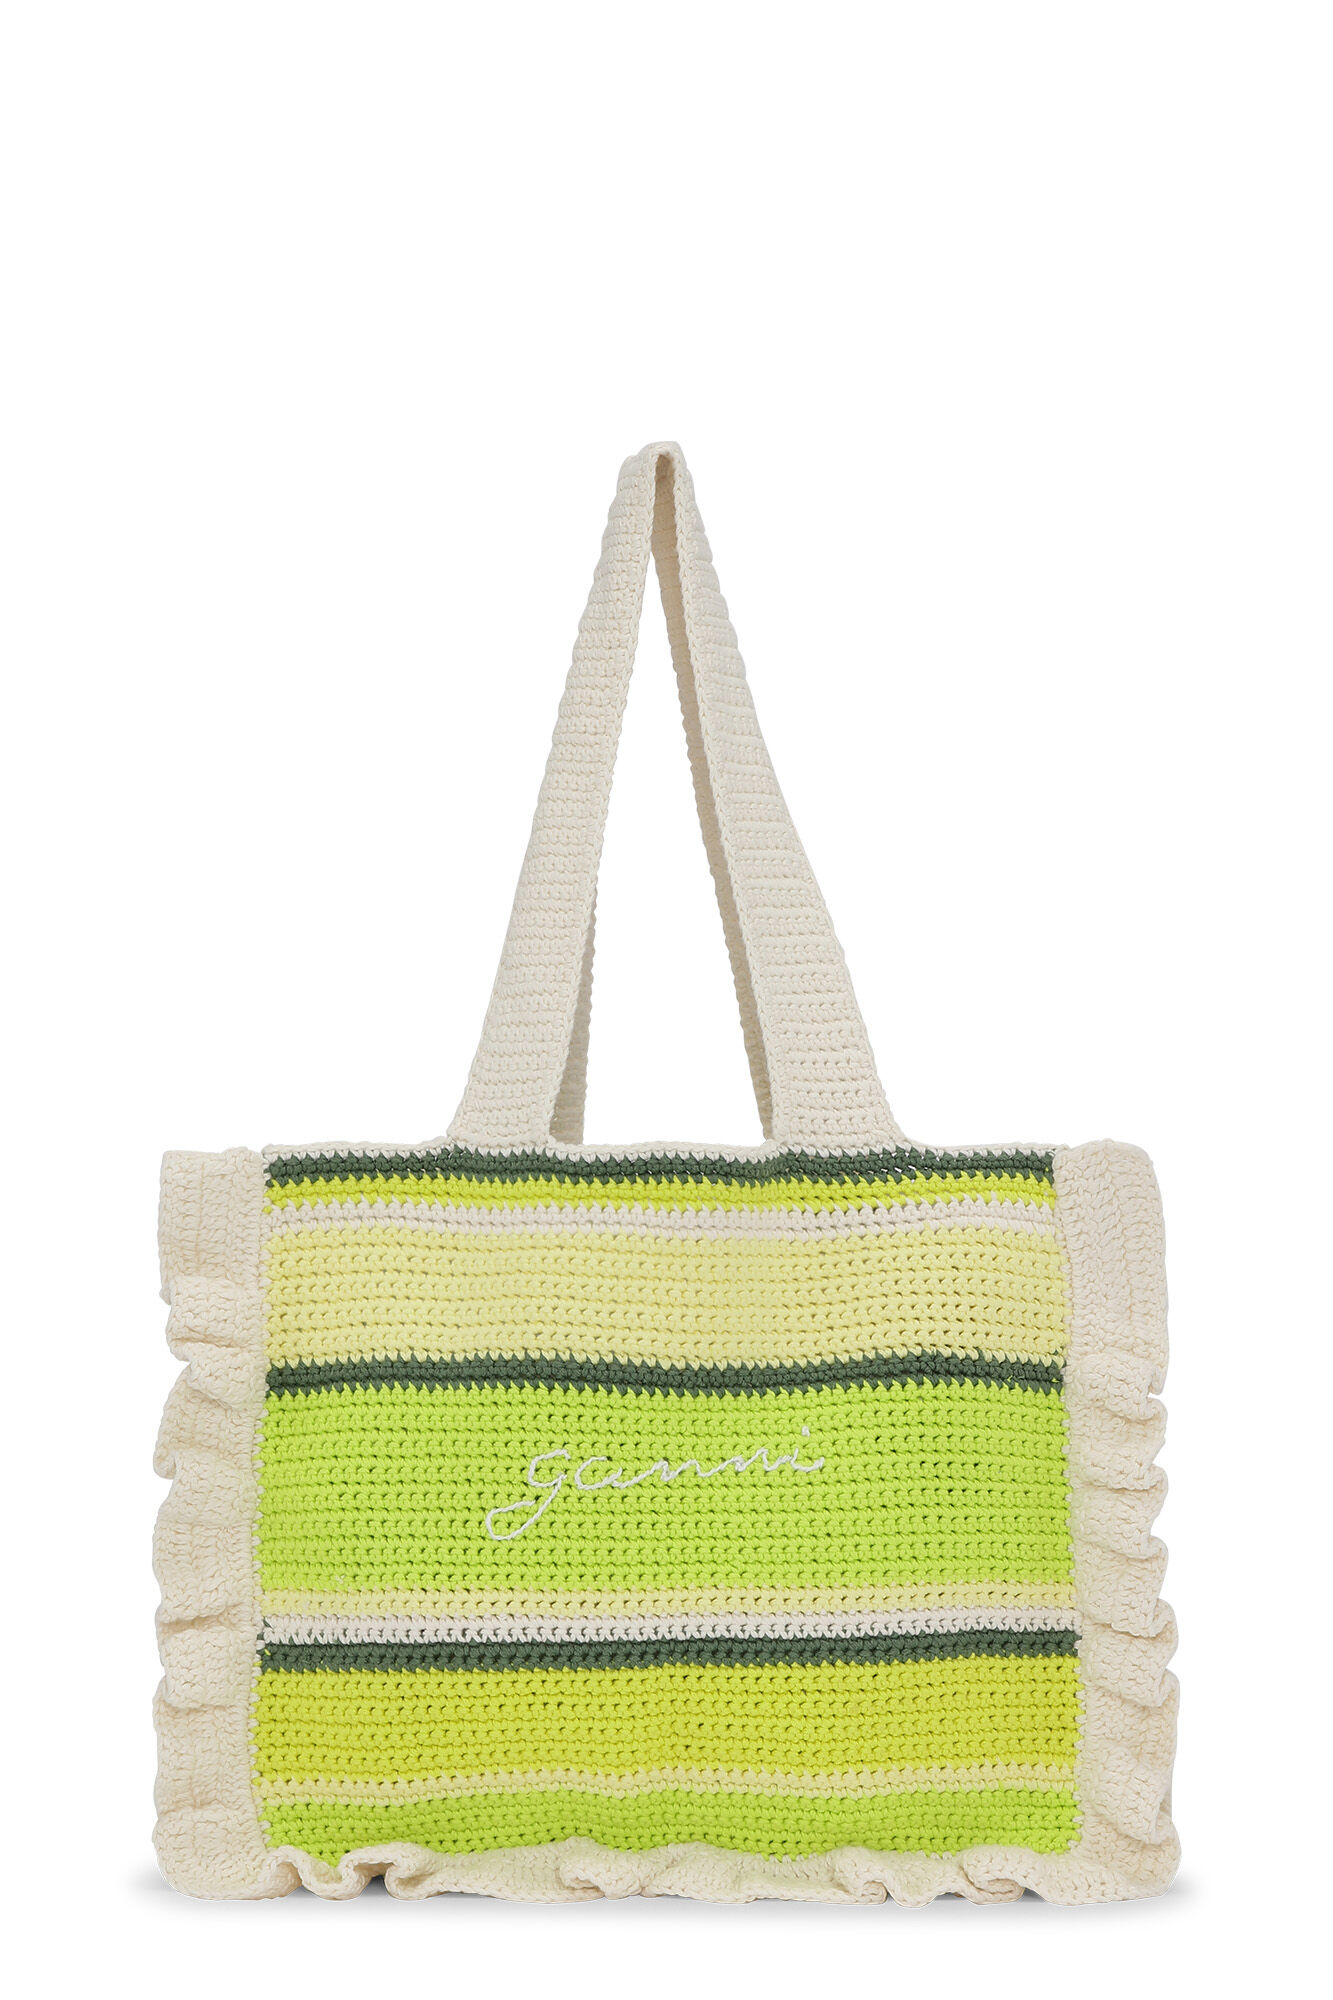 Shiroli Handmade Designer Vibrant Crochet Bag With Frills